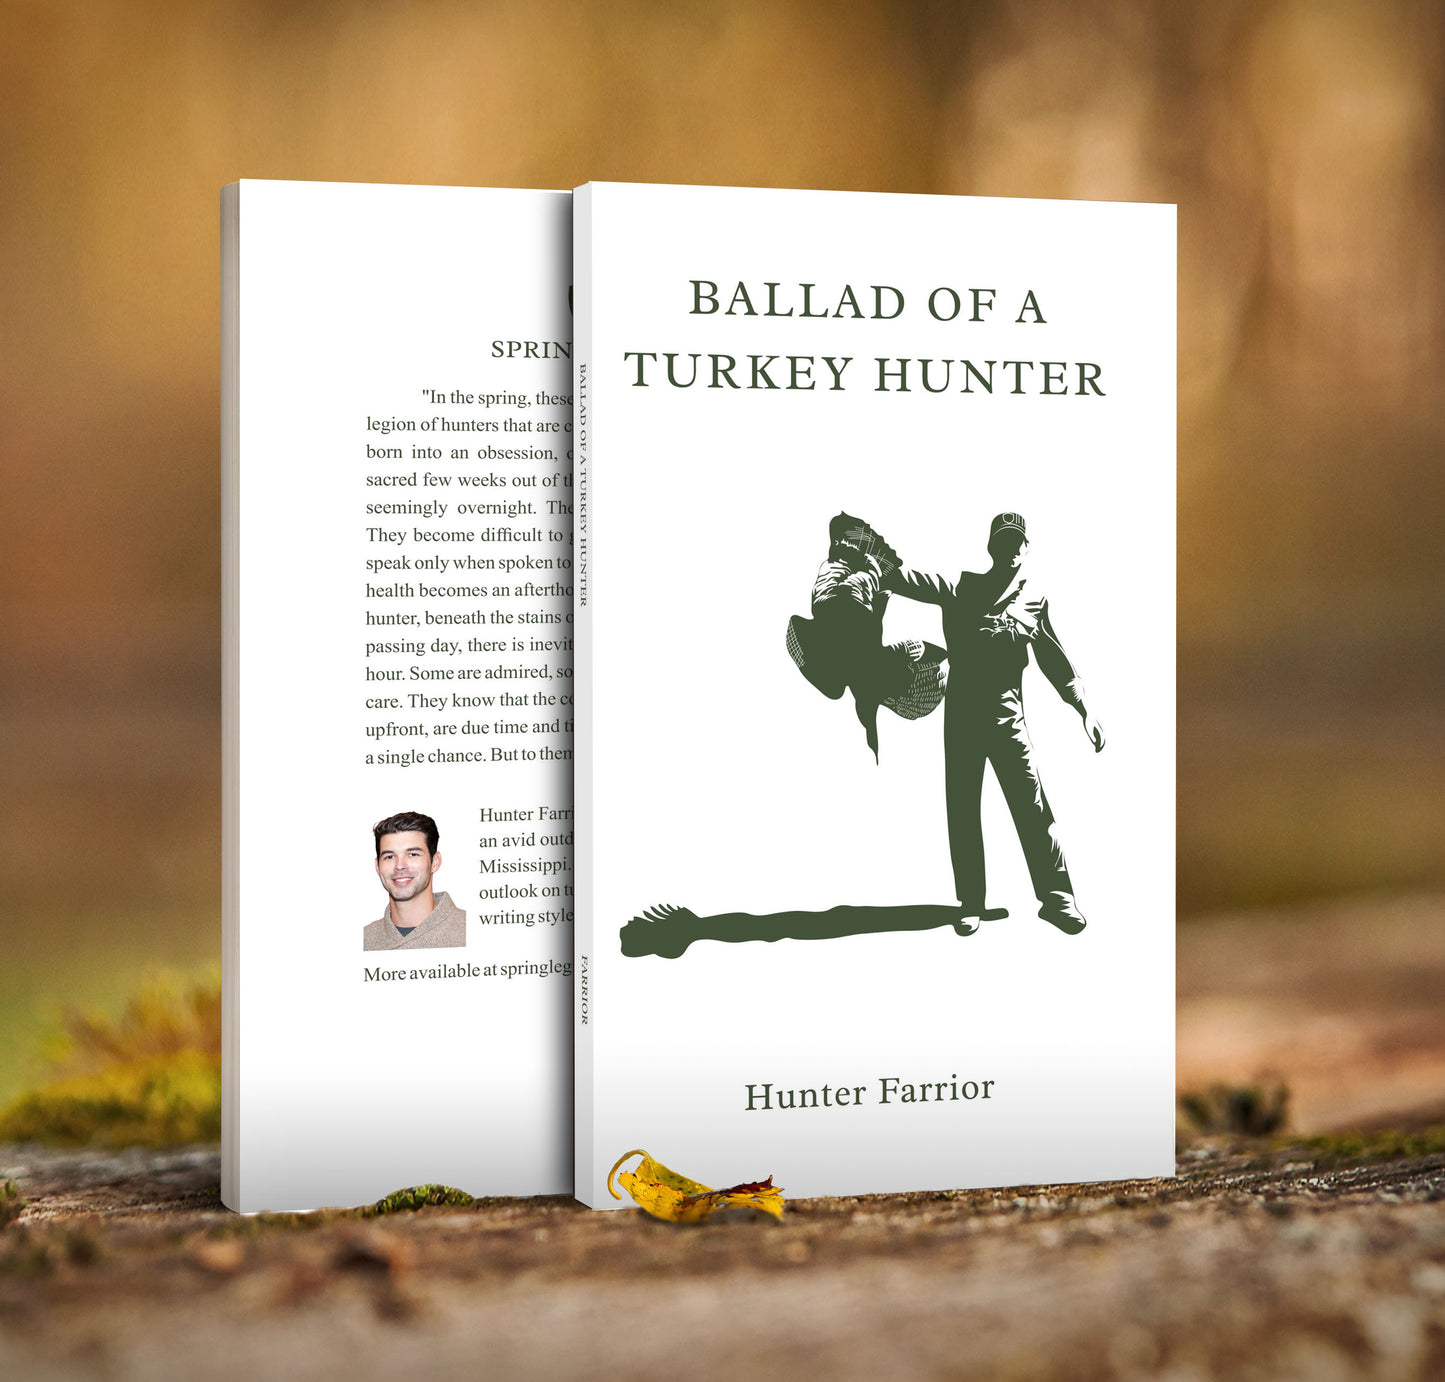 Hunter Farrior, Ballad of a Turkey Hunter